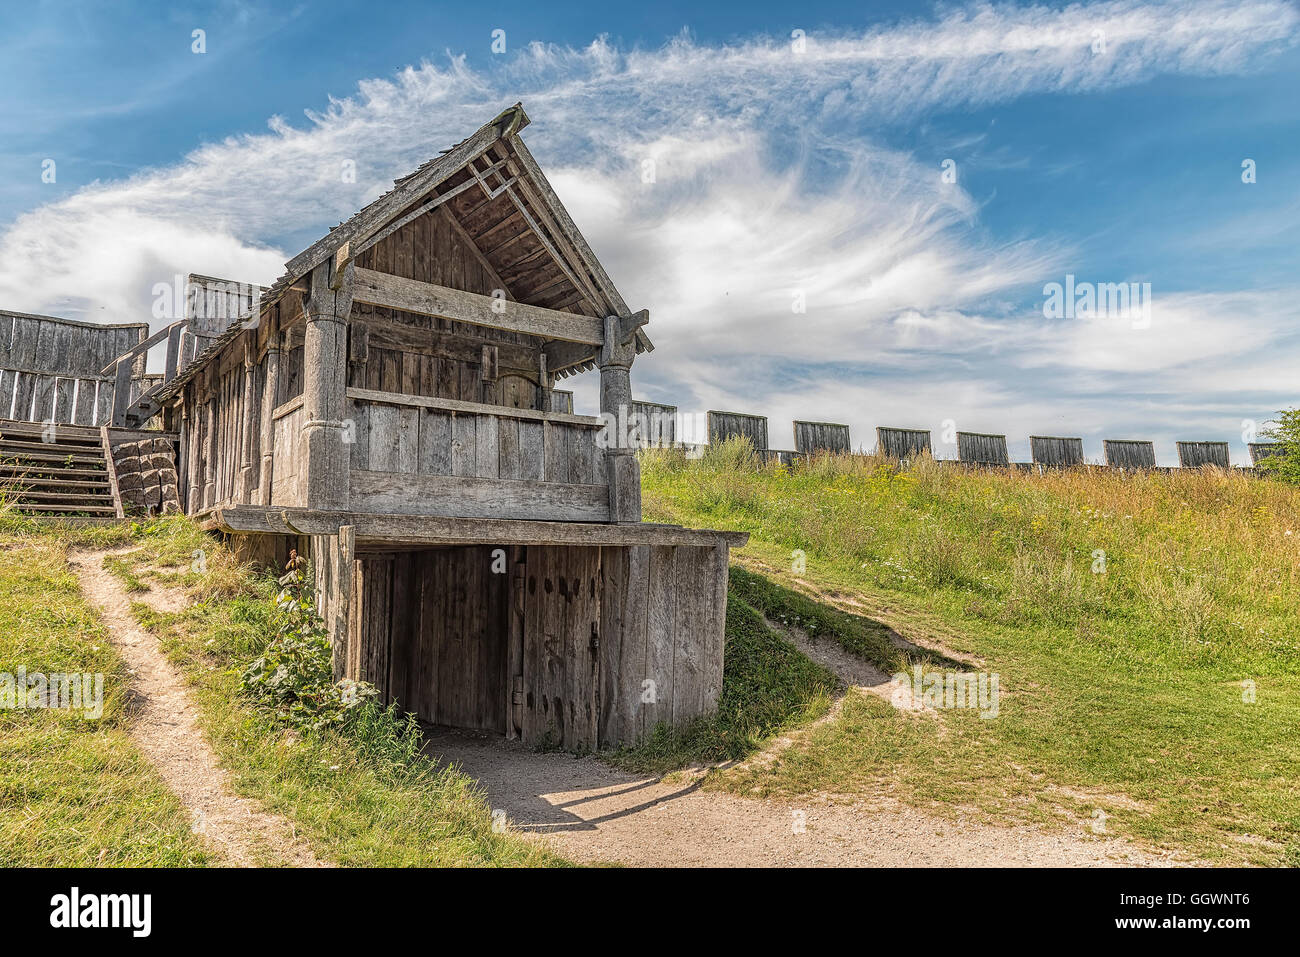 Une image d'un fort viking en bois reconstruit appelé trelleborg dans la ville suédoise du même nom. Banque D'Images